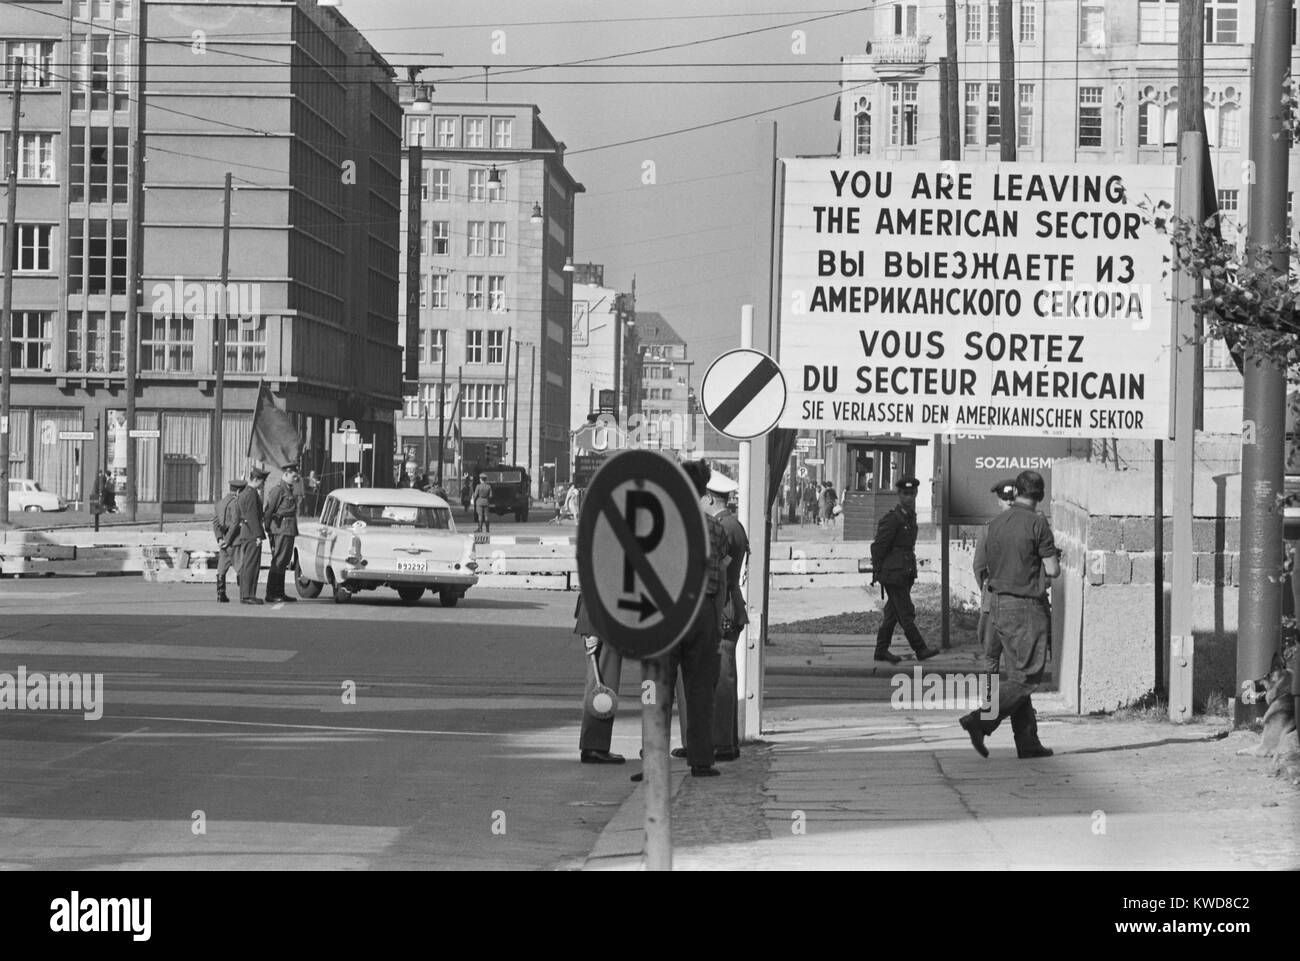 Grenzübergang in West Berlin, mit der Aufschrift "Sie verlassen den amerikanischen Sektor" sind in vier Sprachen. Oktober 1961. Udssr provoziert die Berliner Krise 1961 durch den Rückzug der westlichen Streitkräfte von West Berlin. Wenn sie sich weigerten, die DDR die Berliner Mauer errichtet. (BSLOC 2015 17 232) Stockfoto